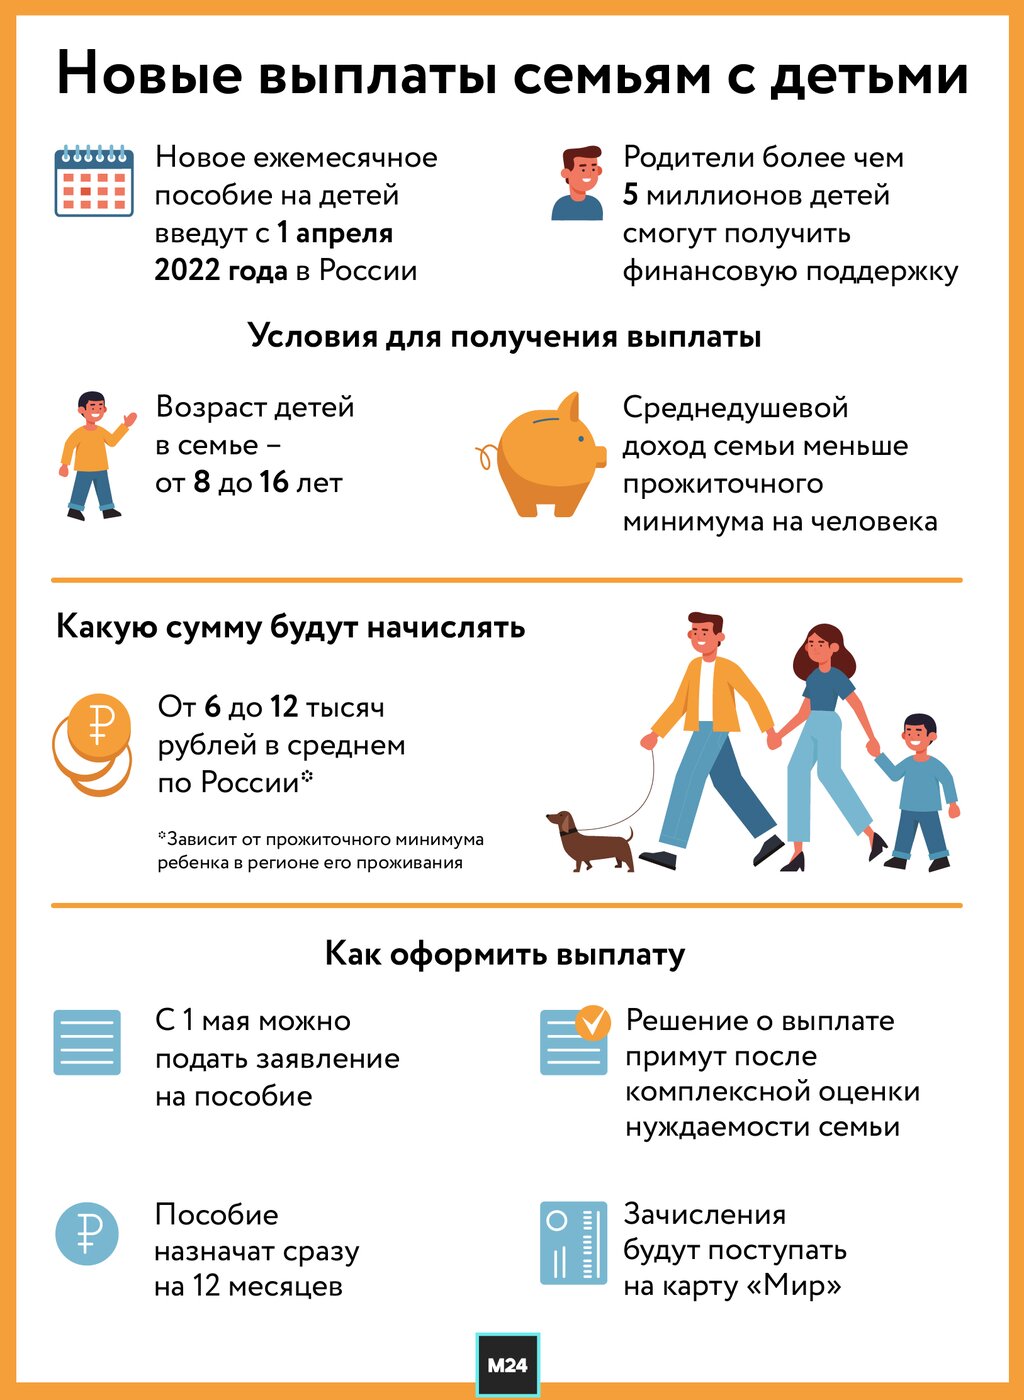 Пособие составляет более 6 000 рублей для детей в возрасте от 8 до 16 лет